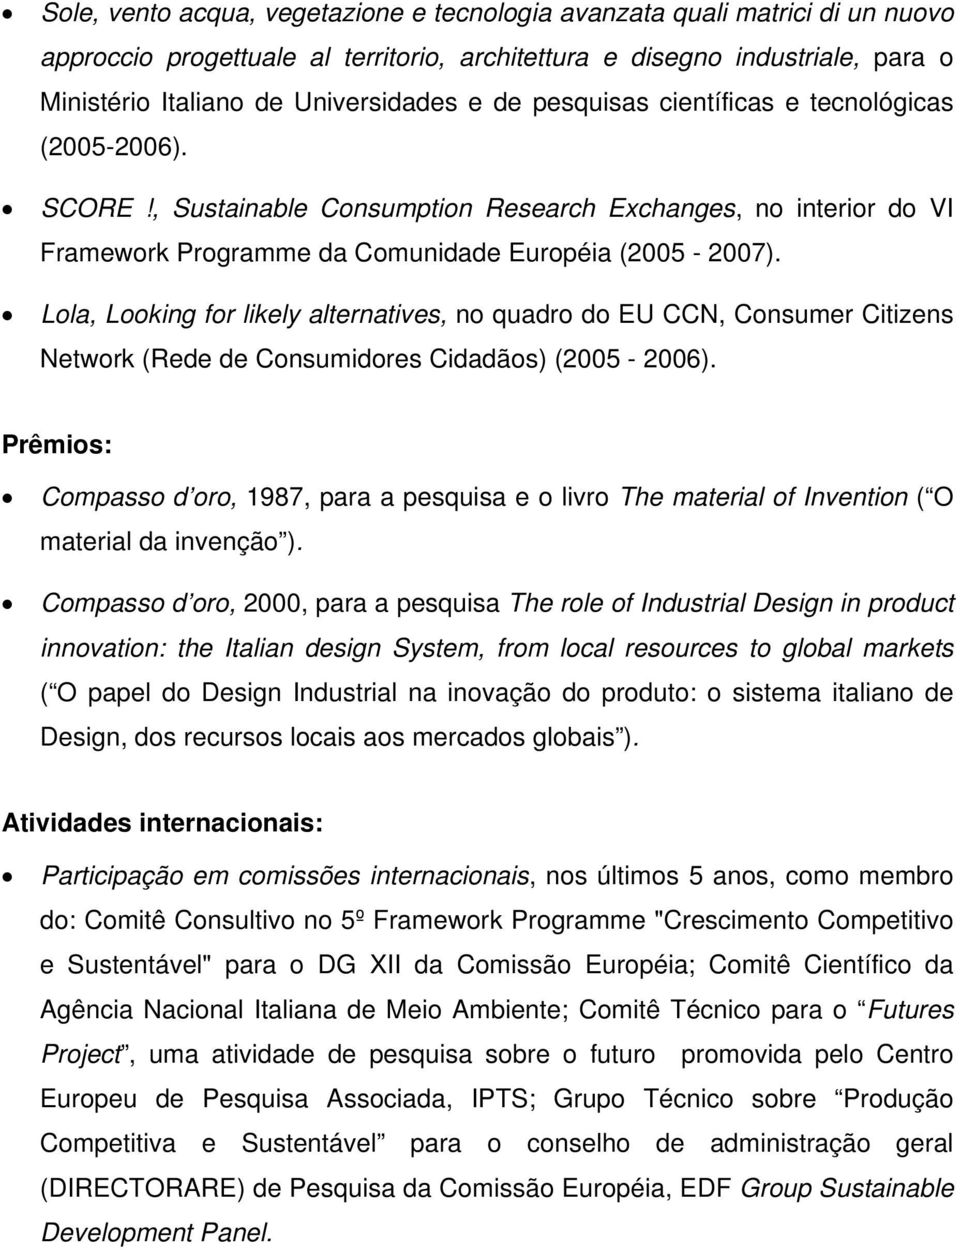 Lola, Looking for likely alternatives, no quadro do EU CCN, Consumer Citizens Network (Rede de Consumidores Cidadãos) (2005-2006).